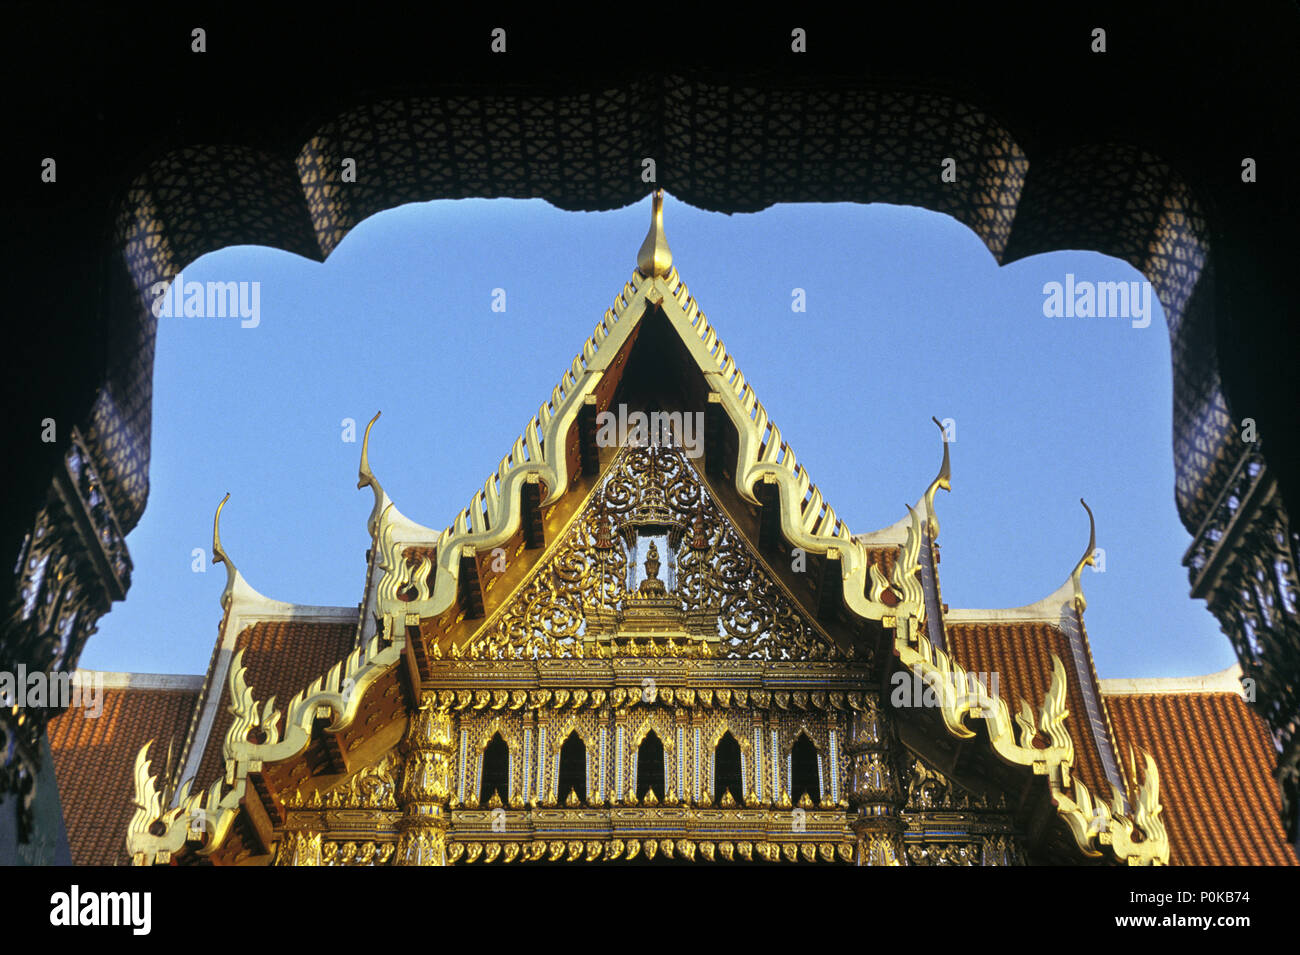 1995 ARCHWAY DORÉ HISTORIQUE WAT BENCHAMABOPHIT EN THAÏLANDE BANGKOK TEMPLE Banque D'Images